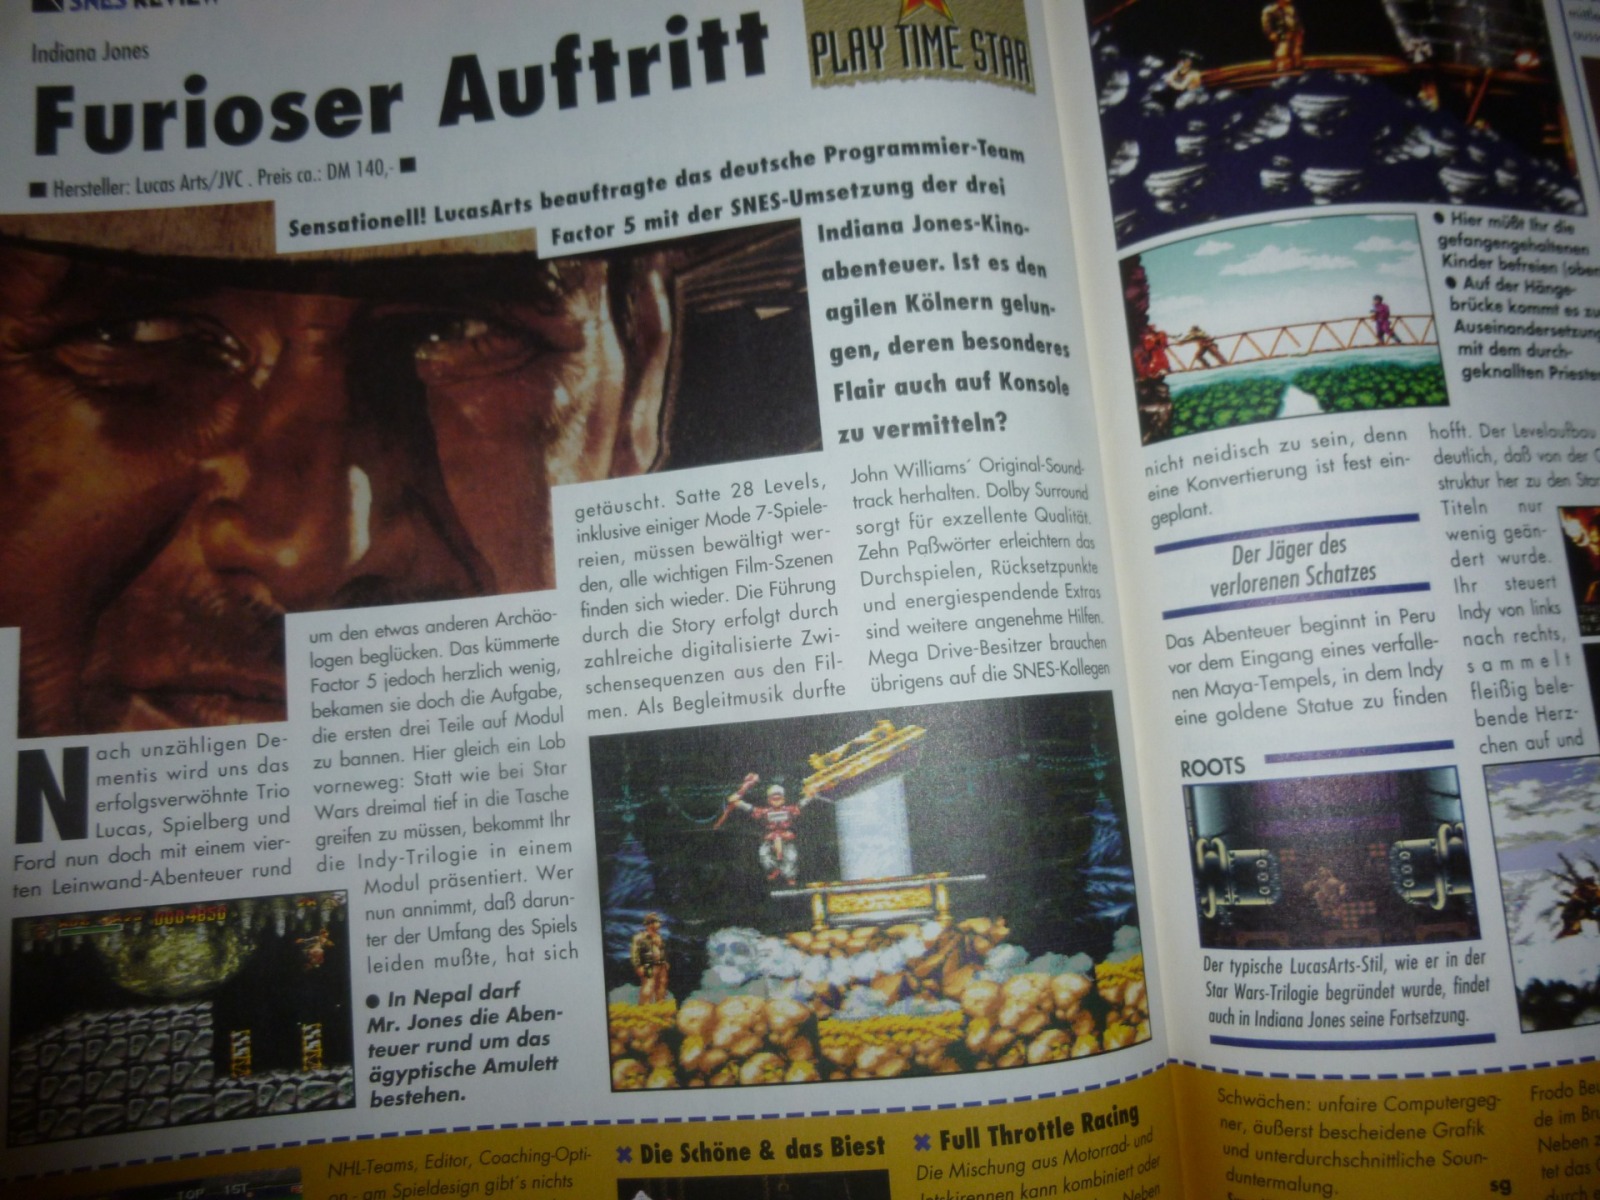 Play Time - Das Computer- und Videospiele-Magazin - Ausgabe 12/94 1994 23